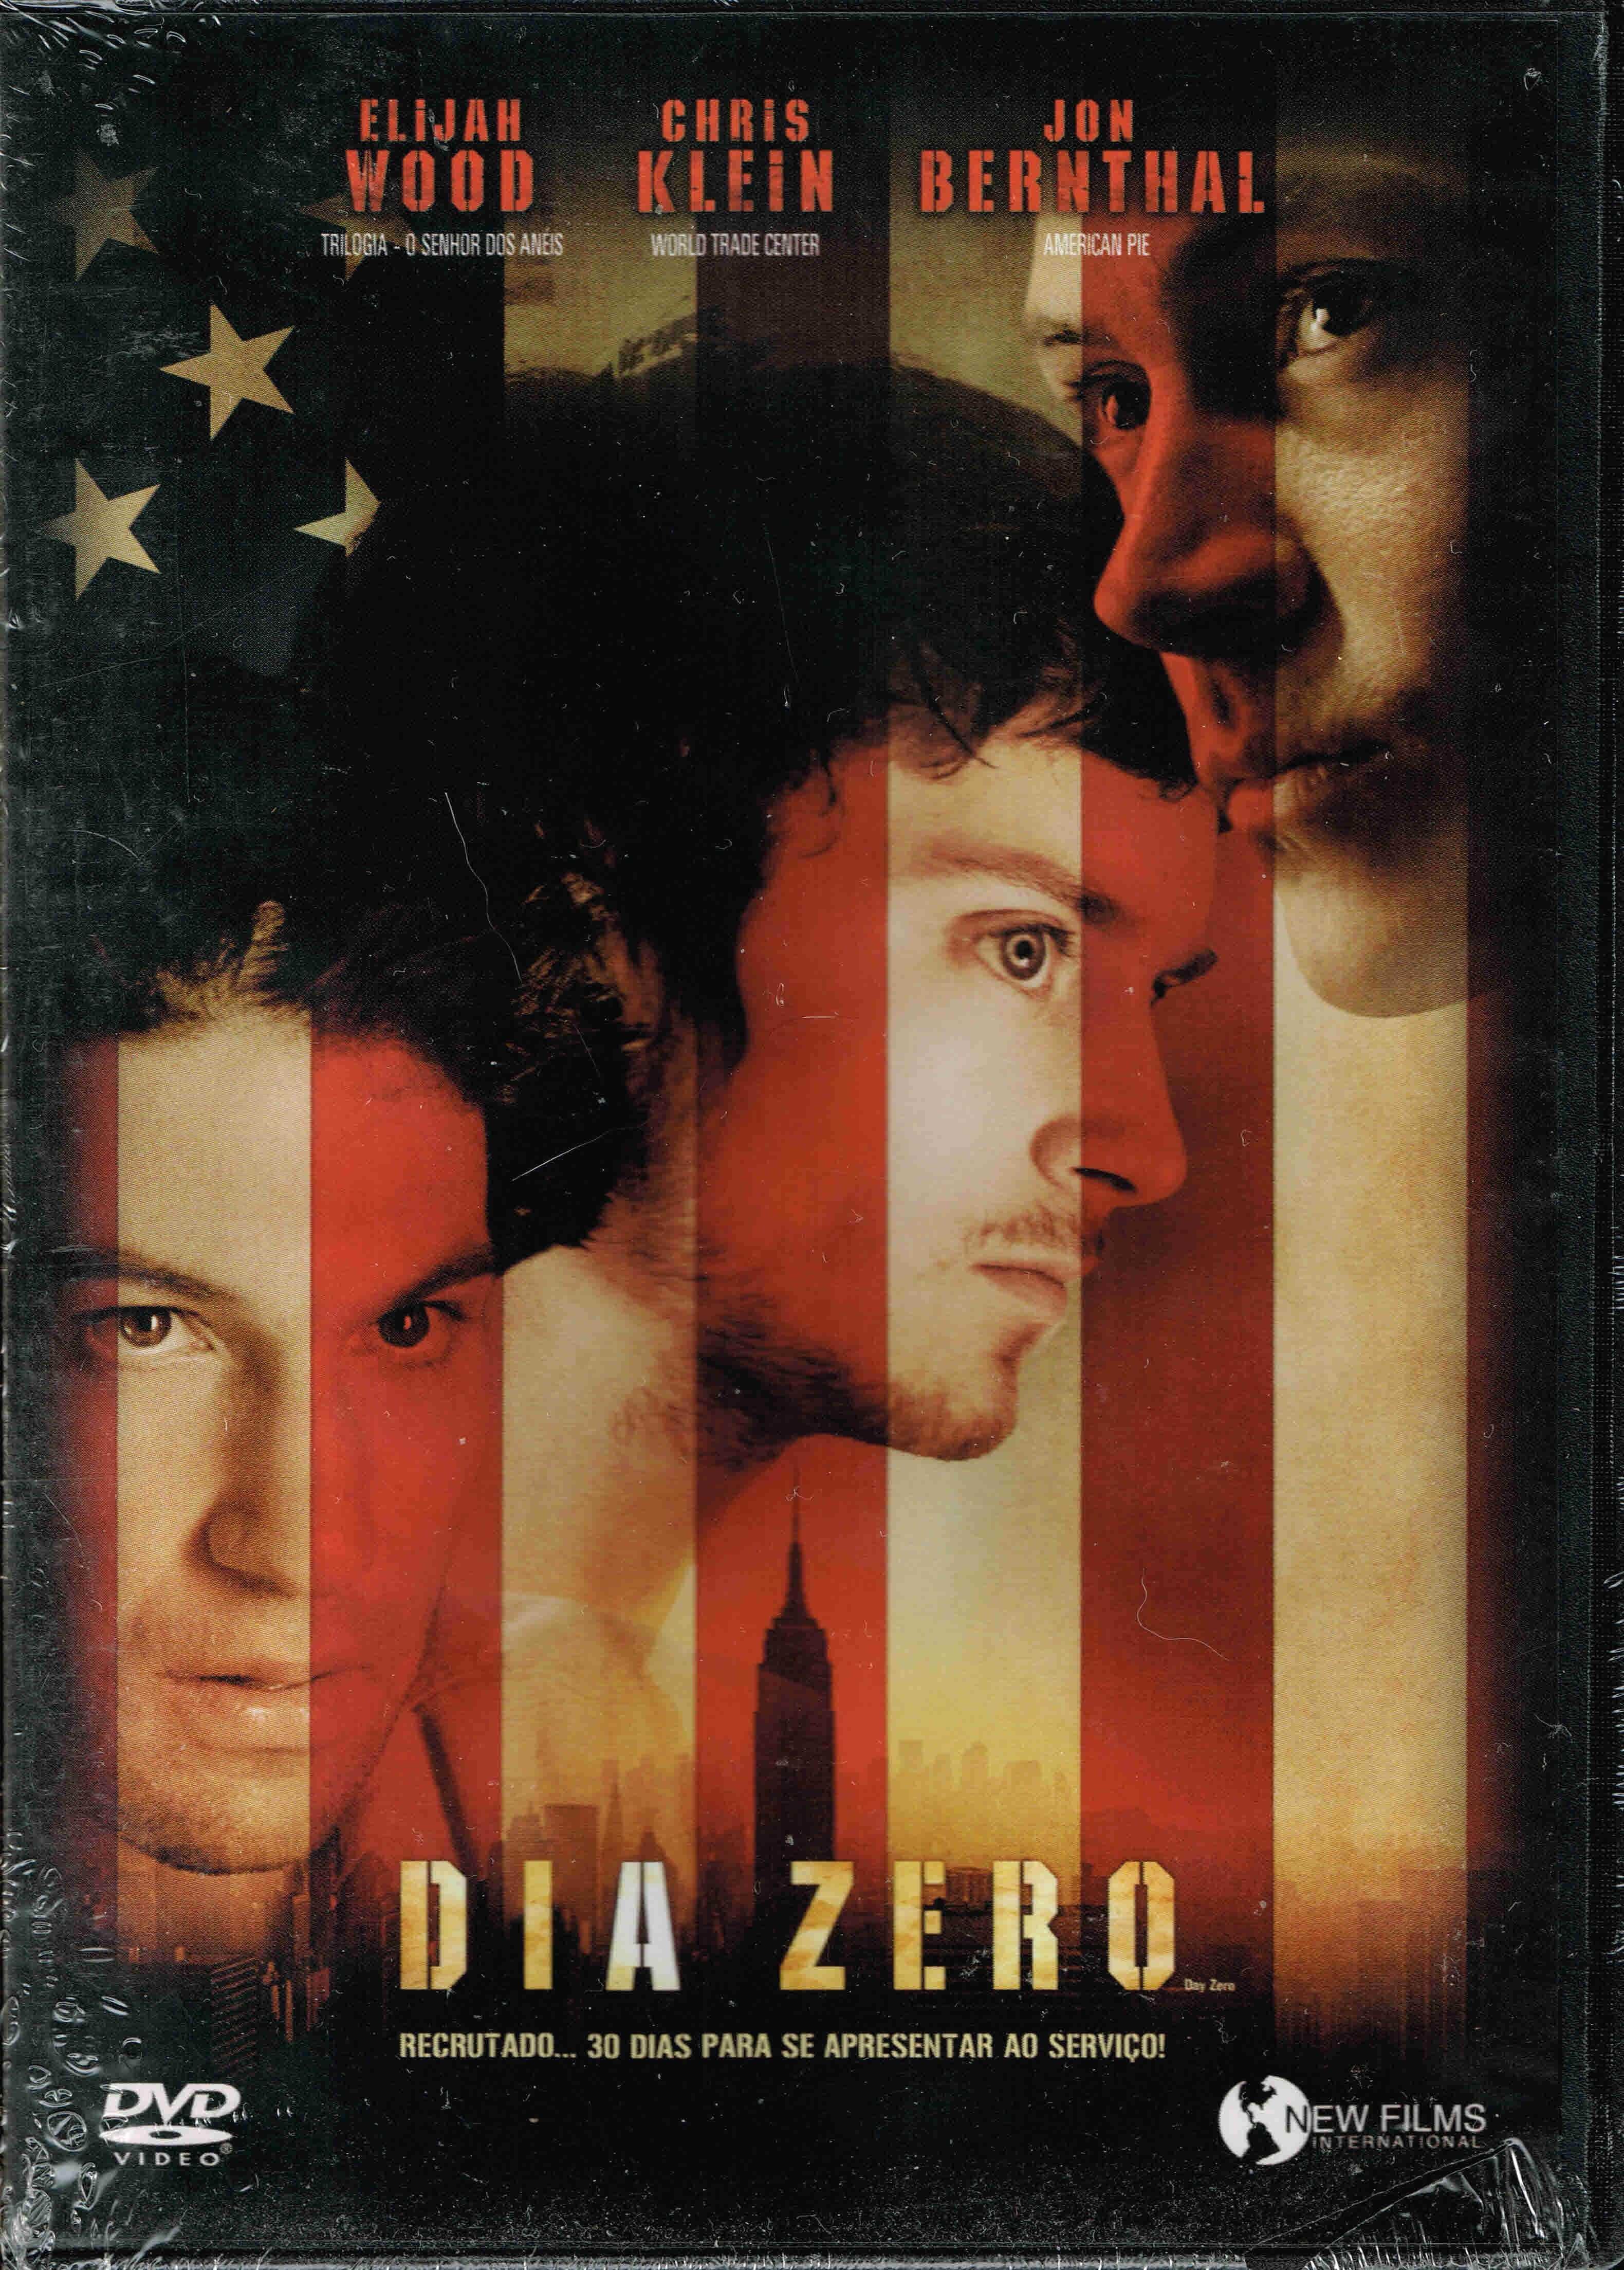 Filme em DVD: Dia Zero (com Elijah Wood) - NOVO! SELADO!